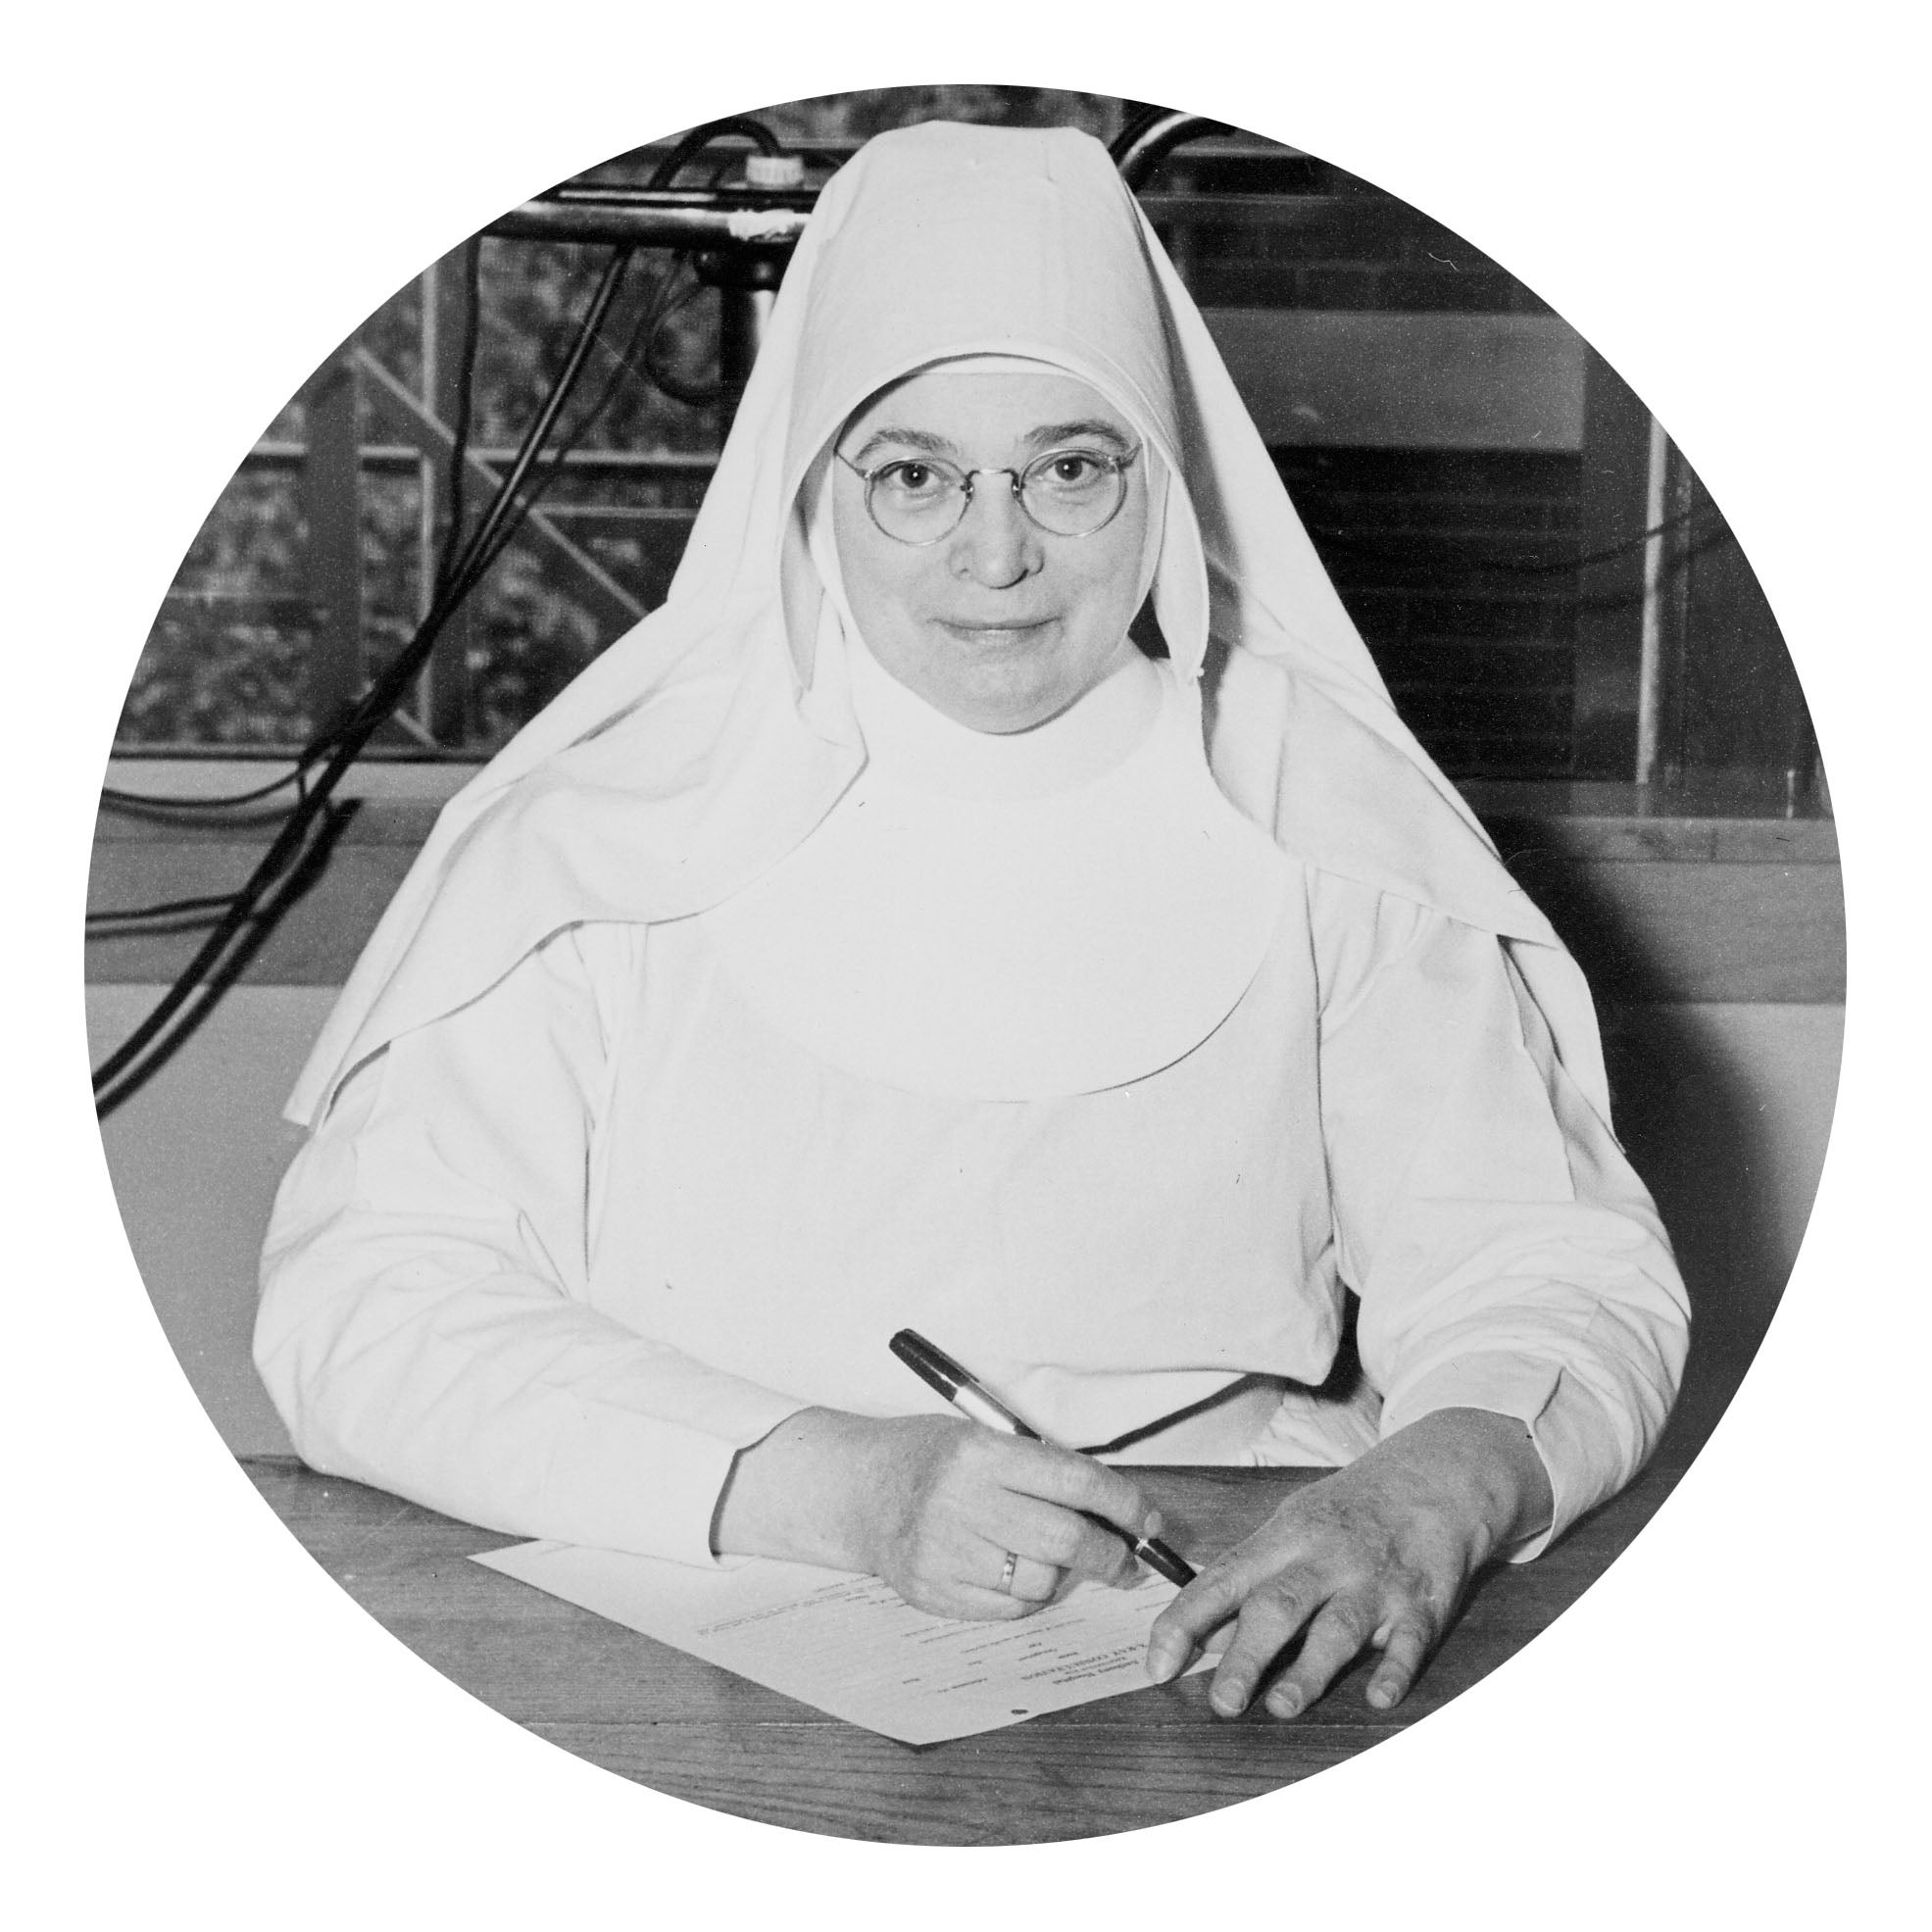 Sister M. Beatrice Merrigan